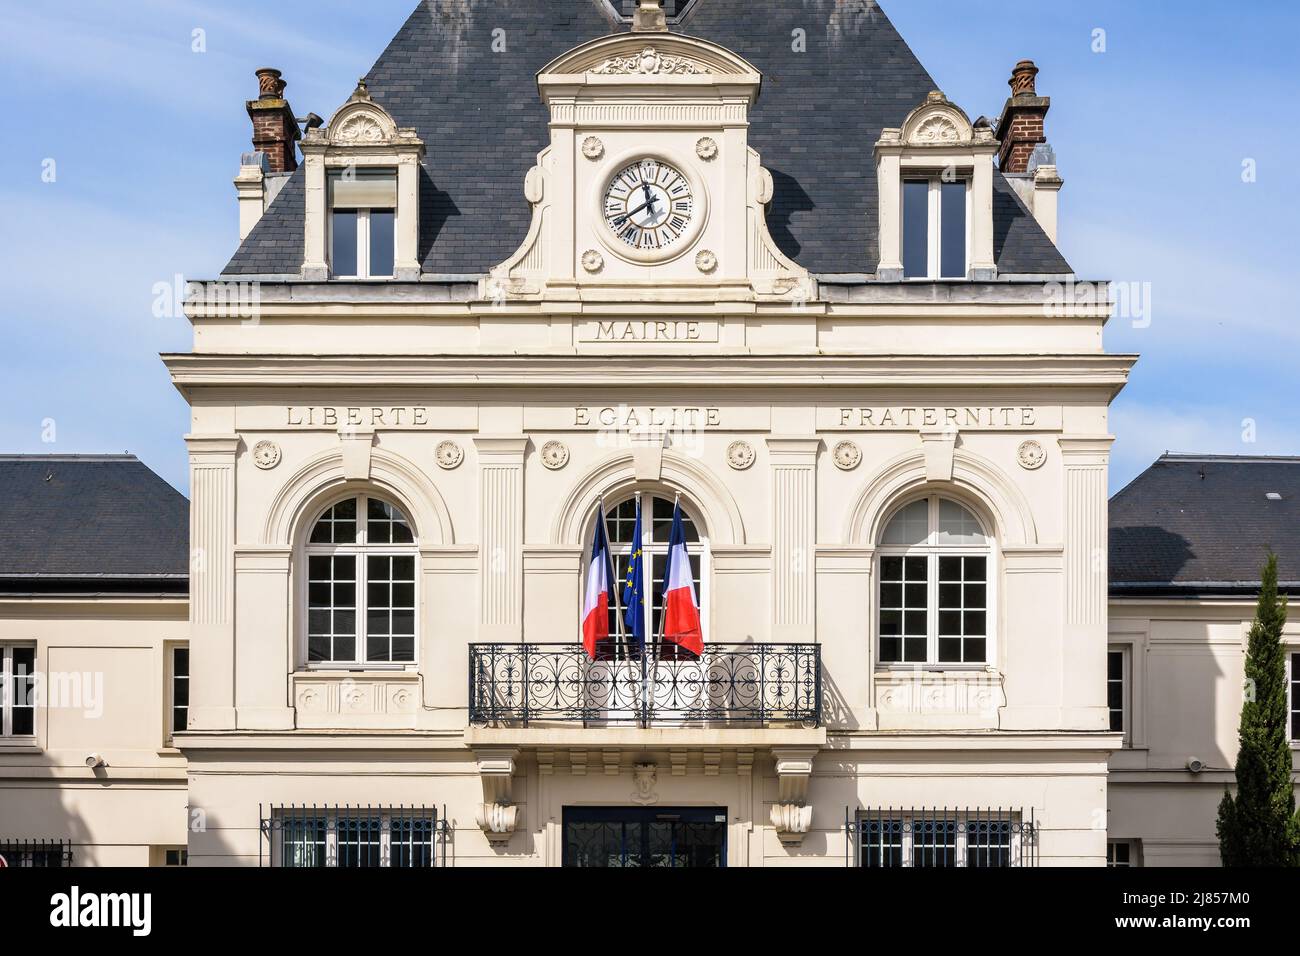 Fachada de un ayuntamiento francés con el lema nacional de Francia 'Libertad, Igualdad, Fraternidad' grabado y las banderas francesa y europea. Foto de stock